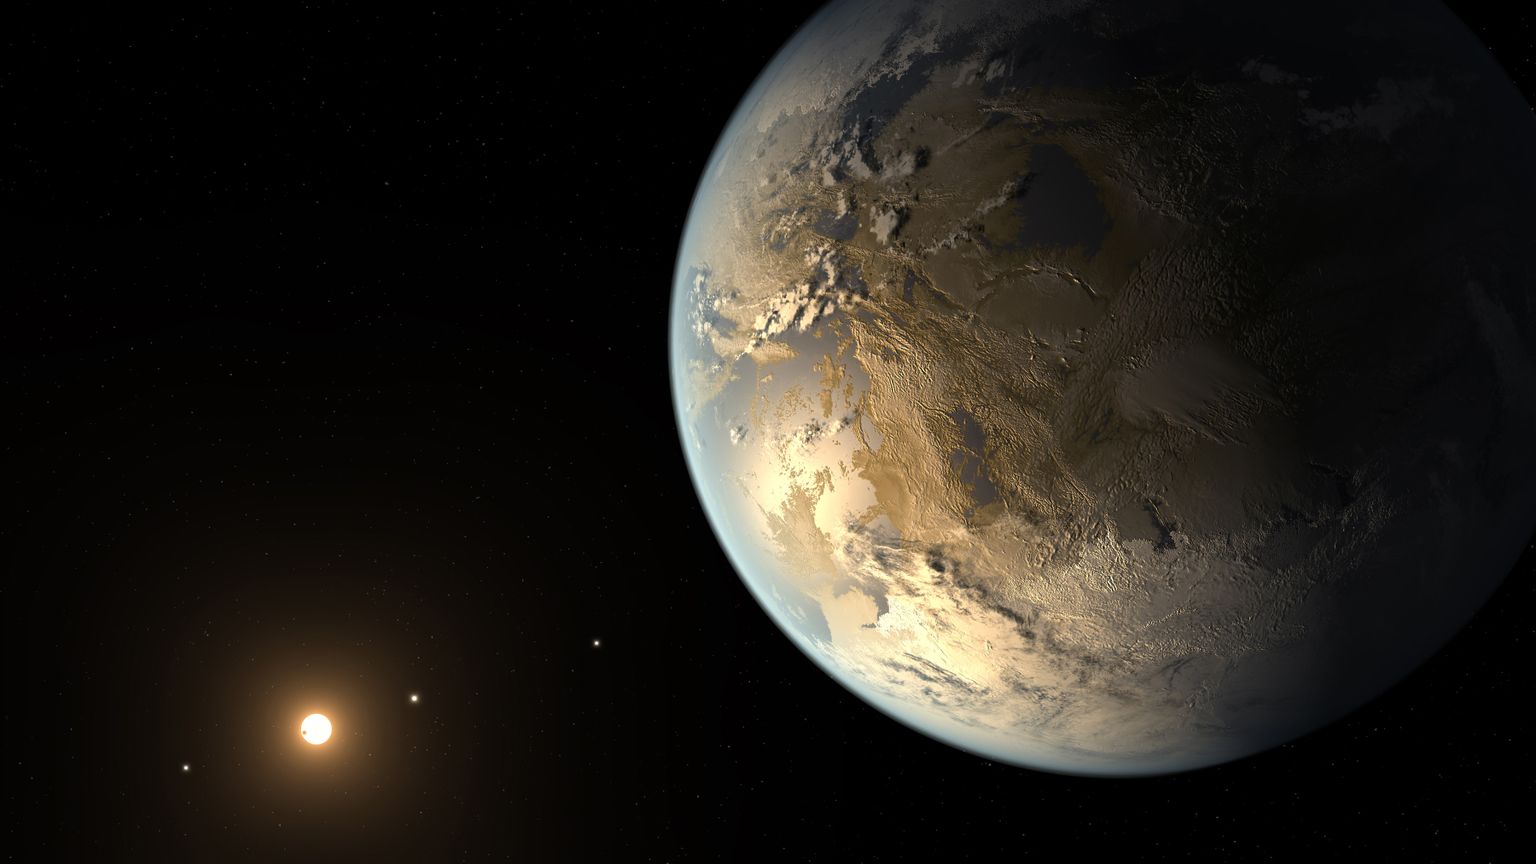 Zemes izmēra planēta "Kepler-186f"